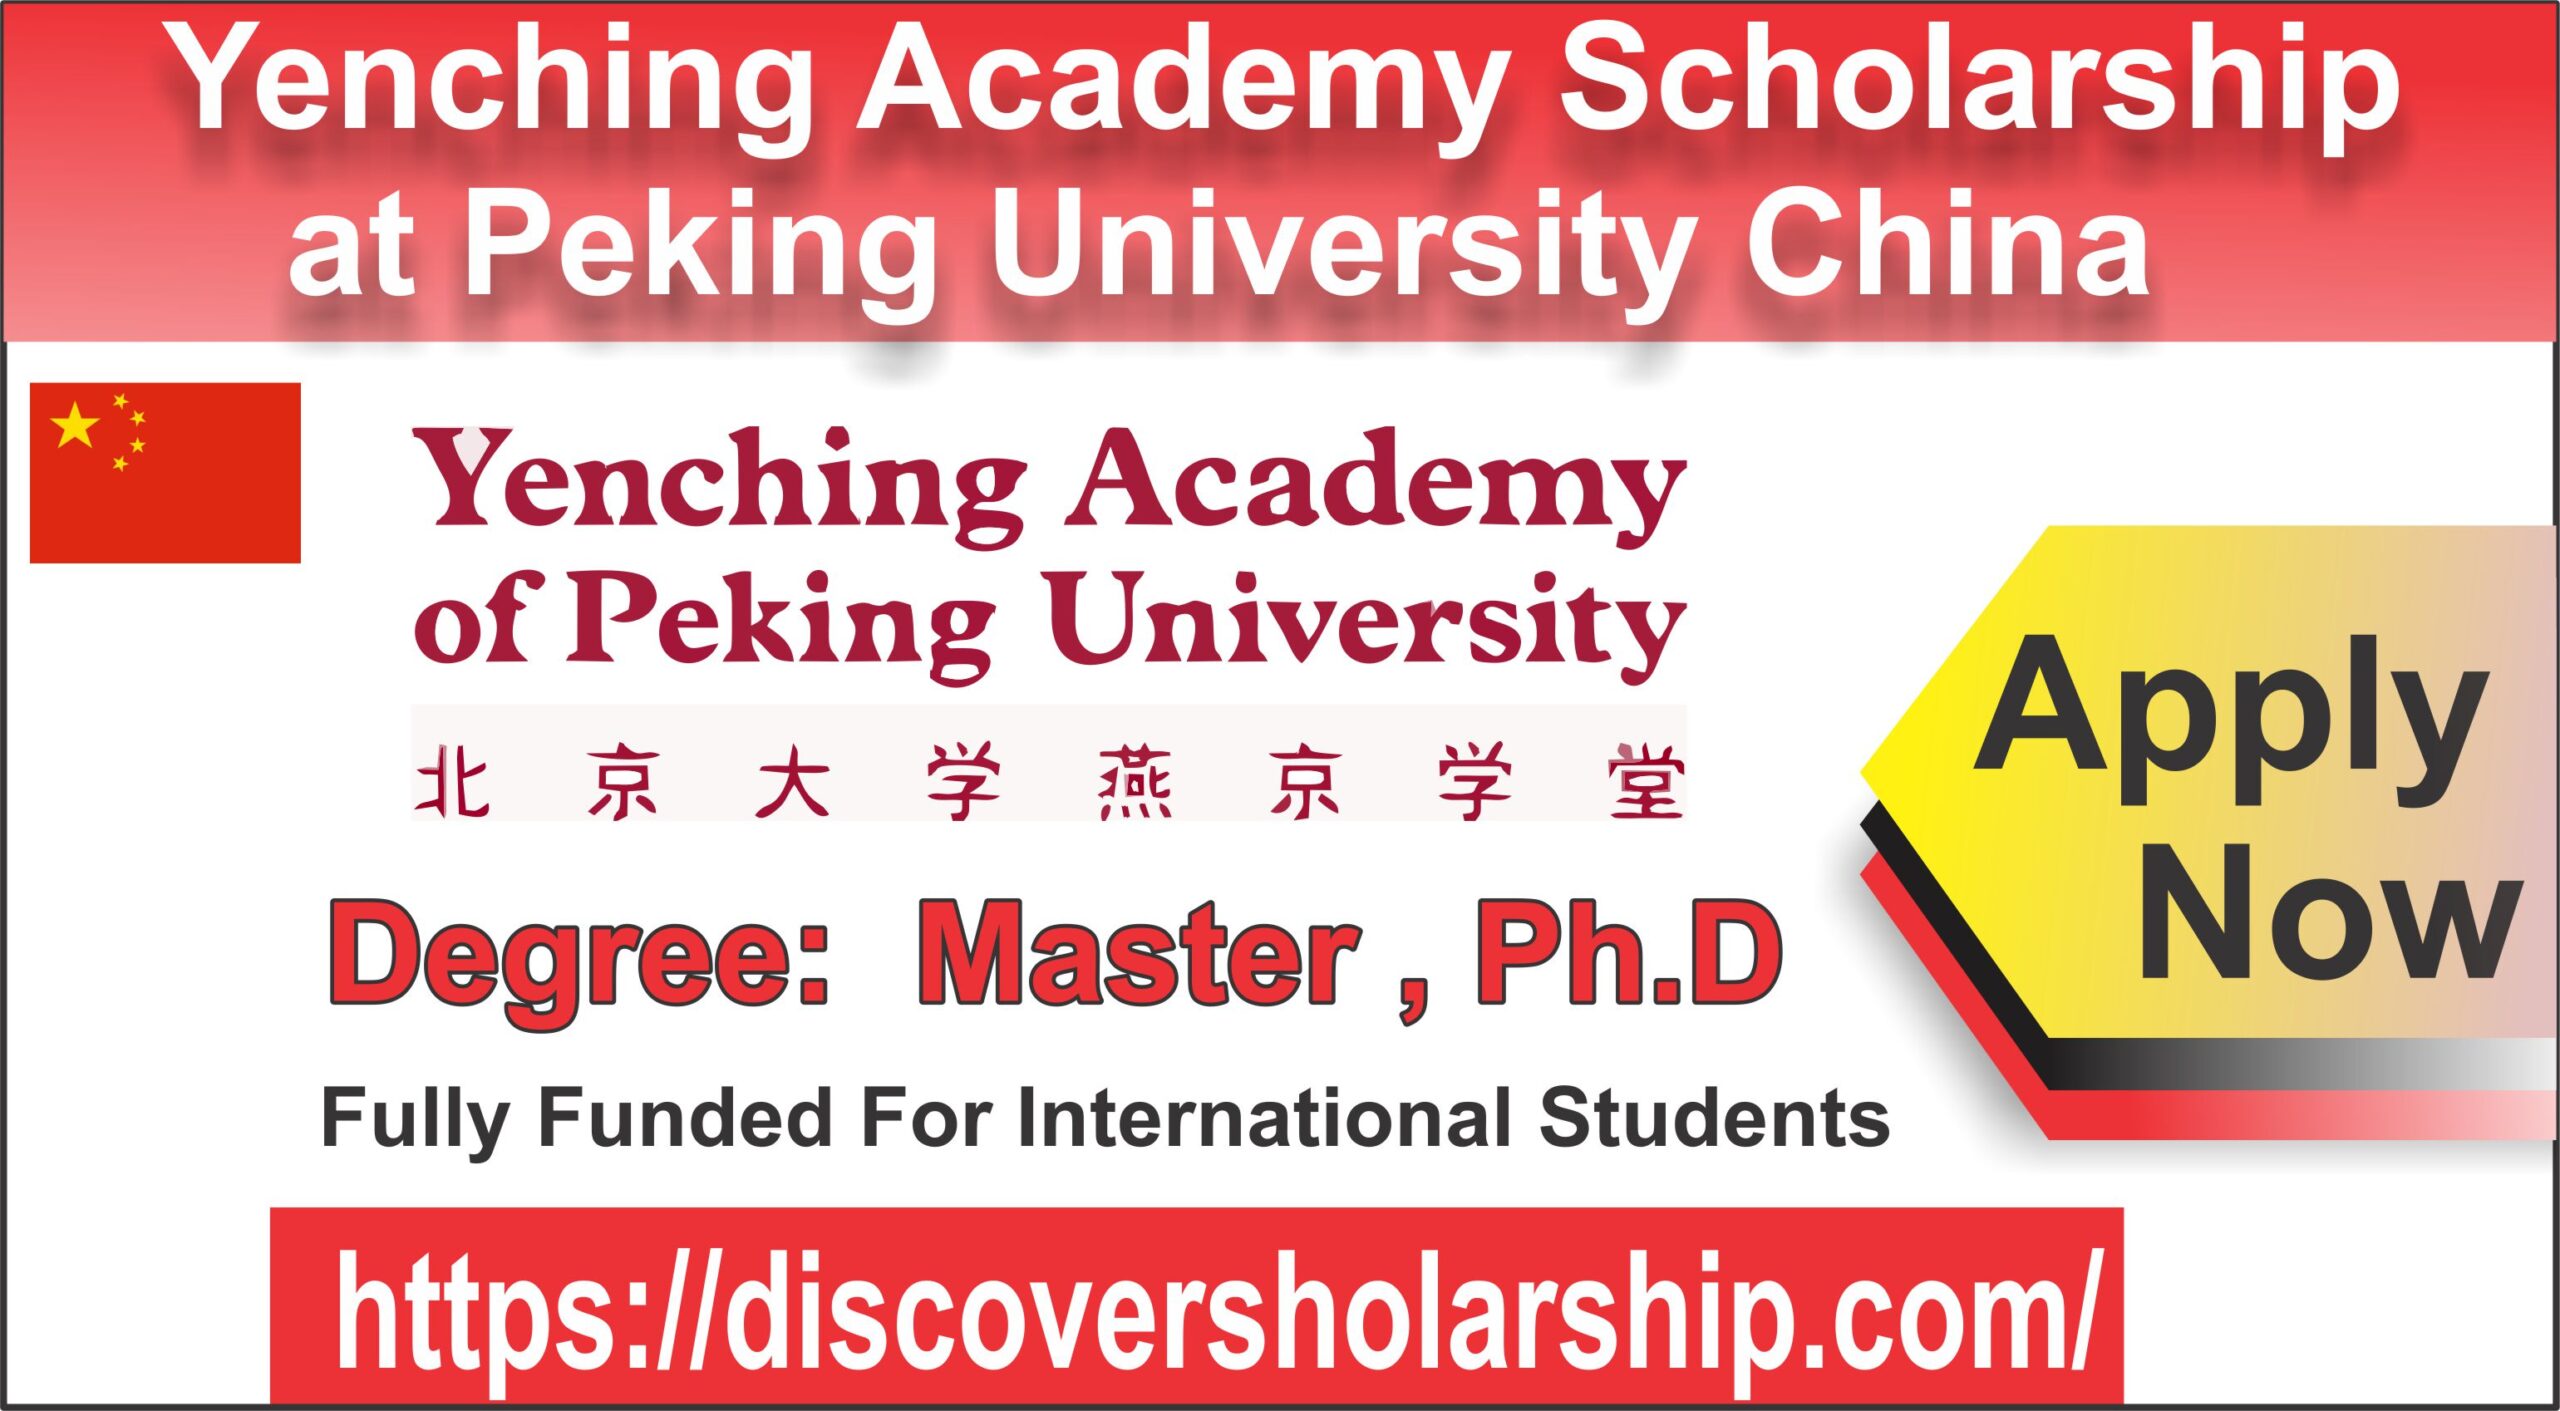 Yenching Academy Scholarship at Peking University China for International Students